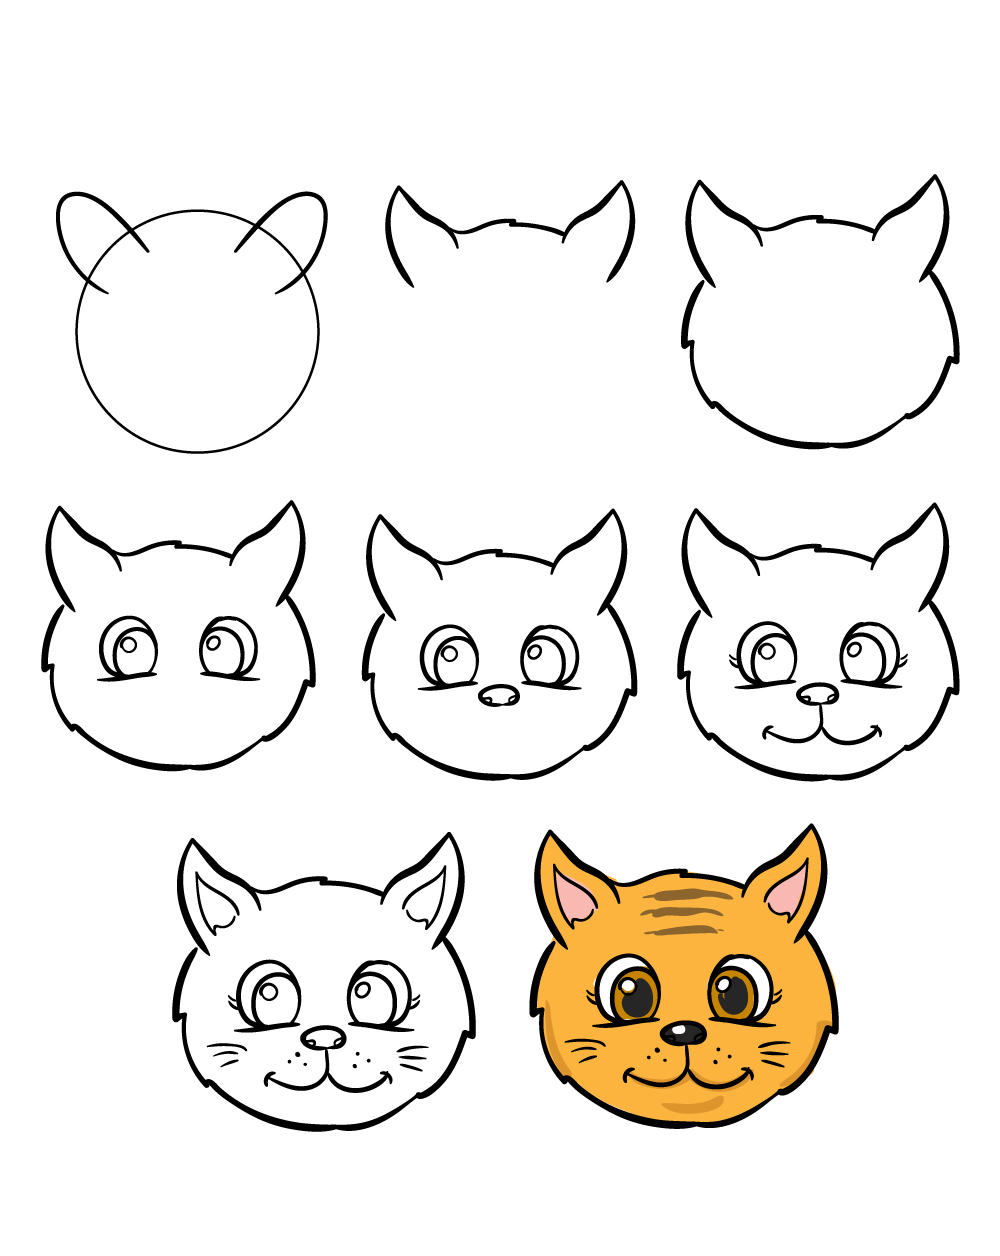 Hướng dẫn vẽ Mặt Nạ Con Thú  Vẽ mặt nạ con mèo  Làm mặt nạ chơi trung thu   Smile art  YouTube